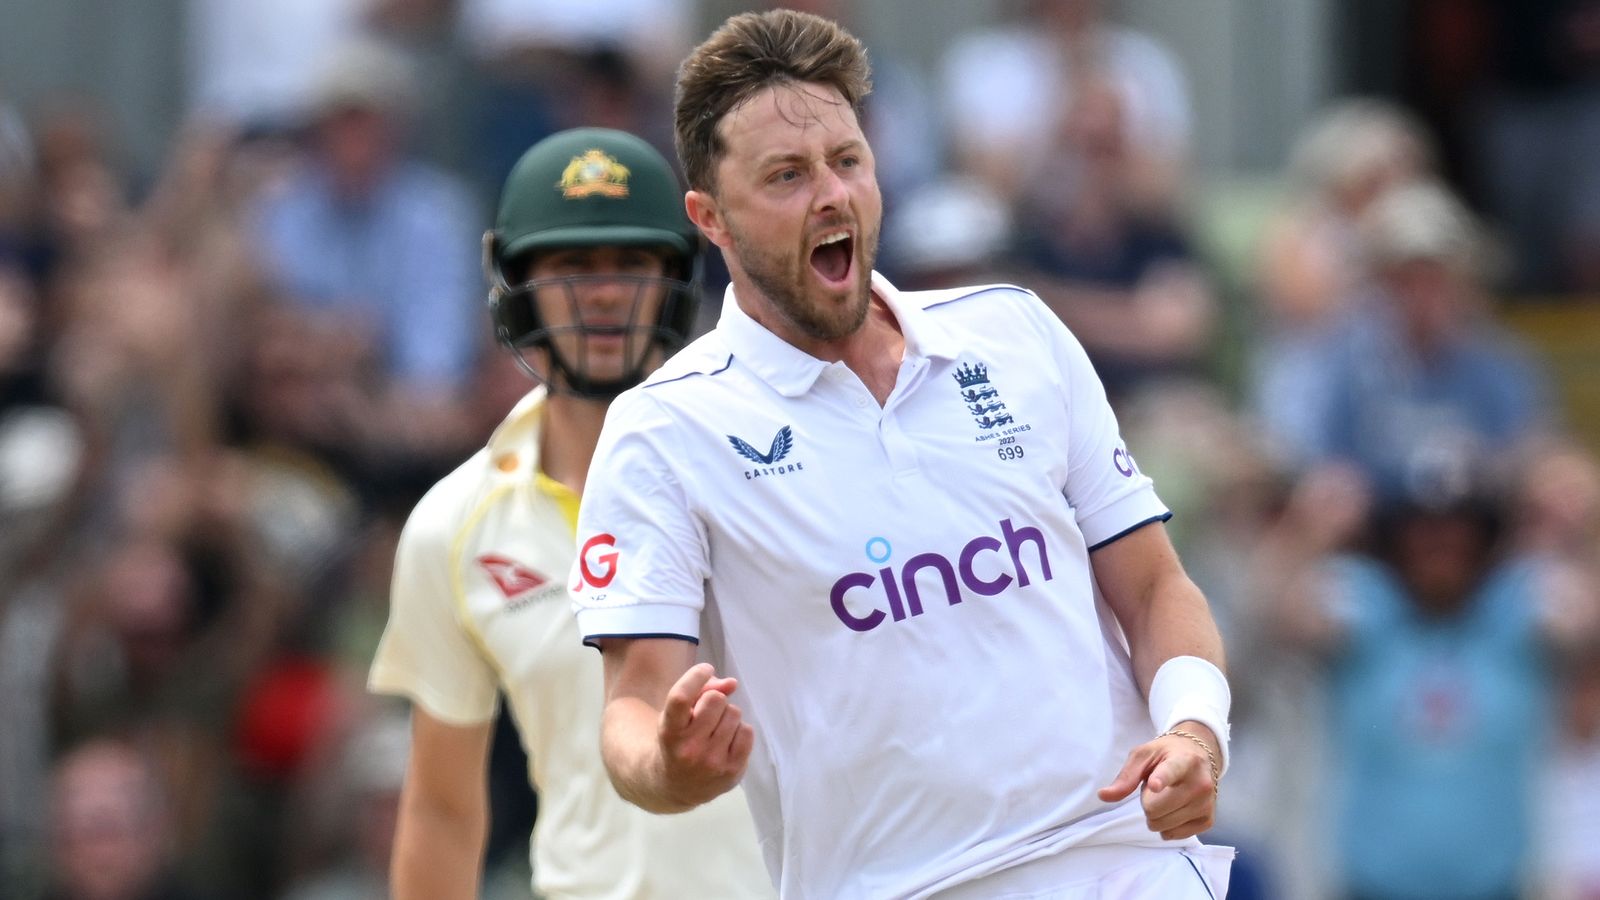 The Ashes: Der Engländer Ollie Robinson entgeht der Sanktion nach Bemerkungen gegenüber dem Australier Usman Khawaja im ersten Test in Edgbaston |  Cricket-Nachrichten